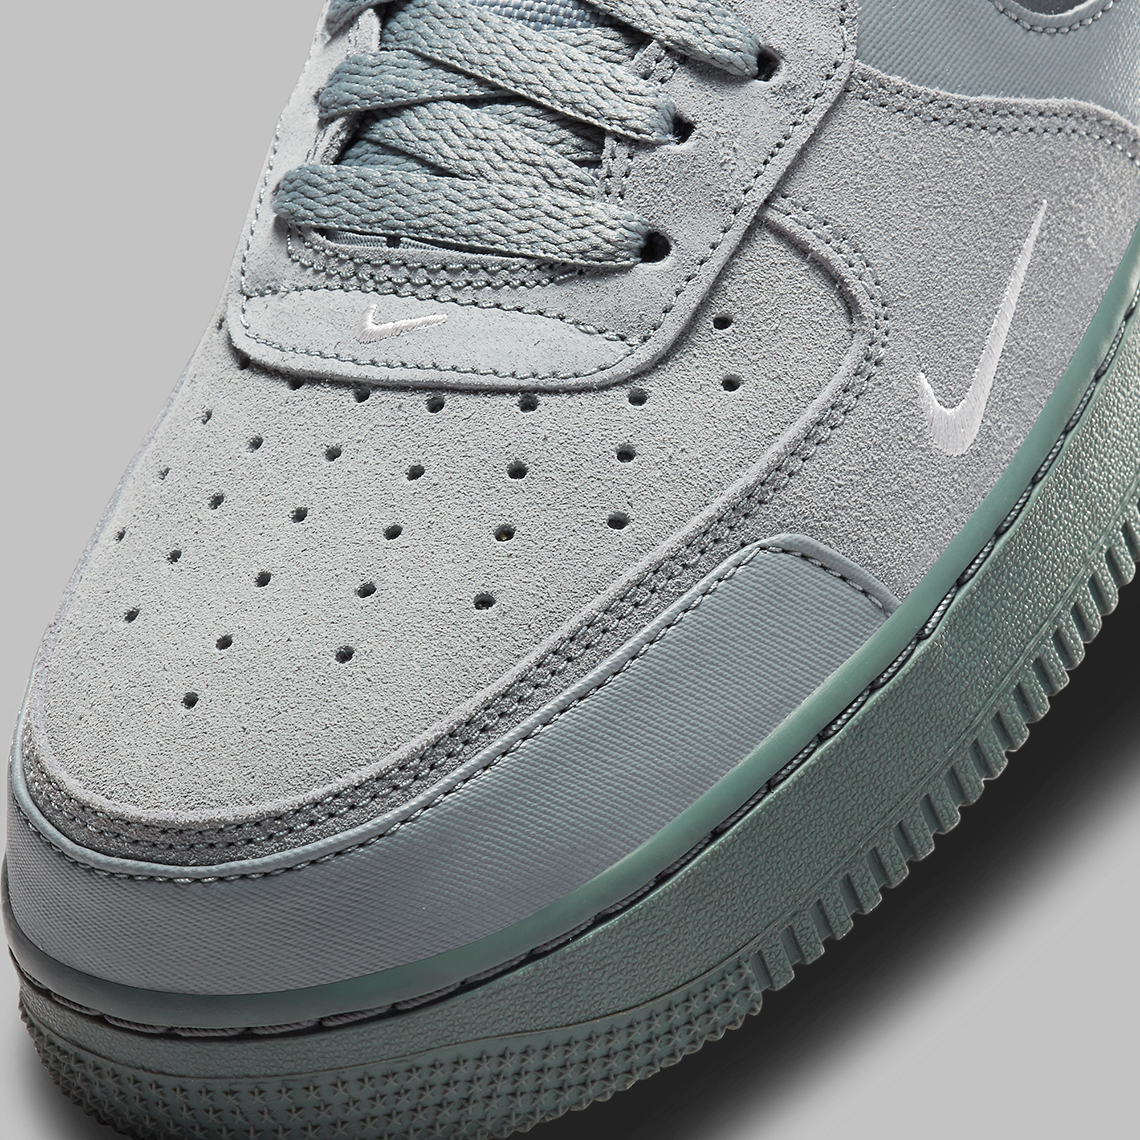 Nike Air Force 1 DO6709-100 DO6709-001 DO6709-002 | SneakerNews.com